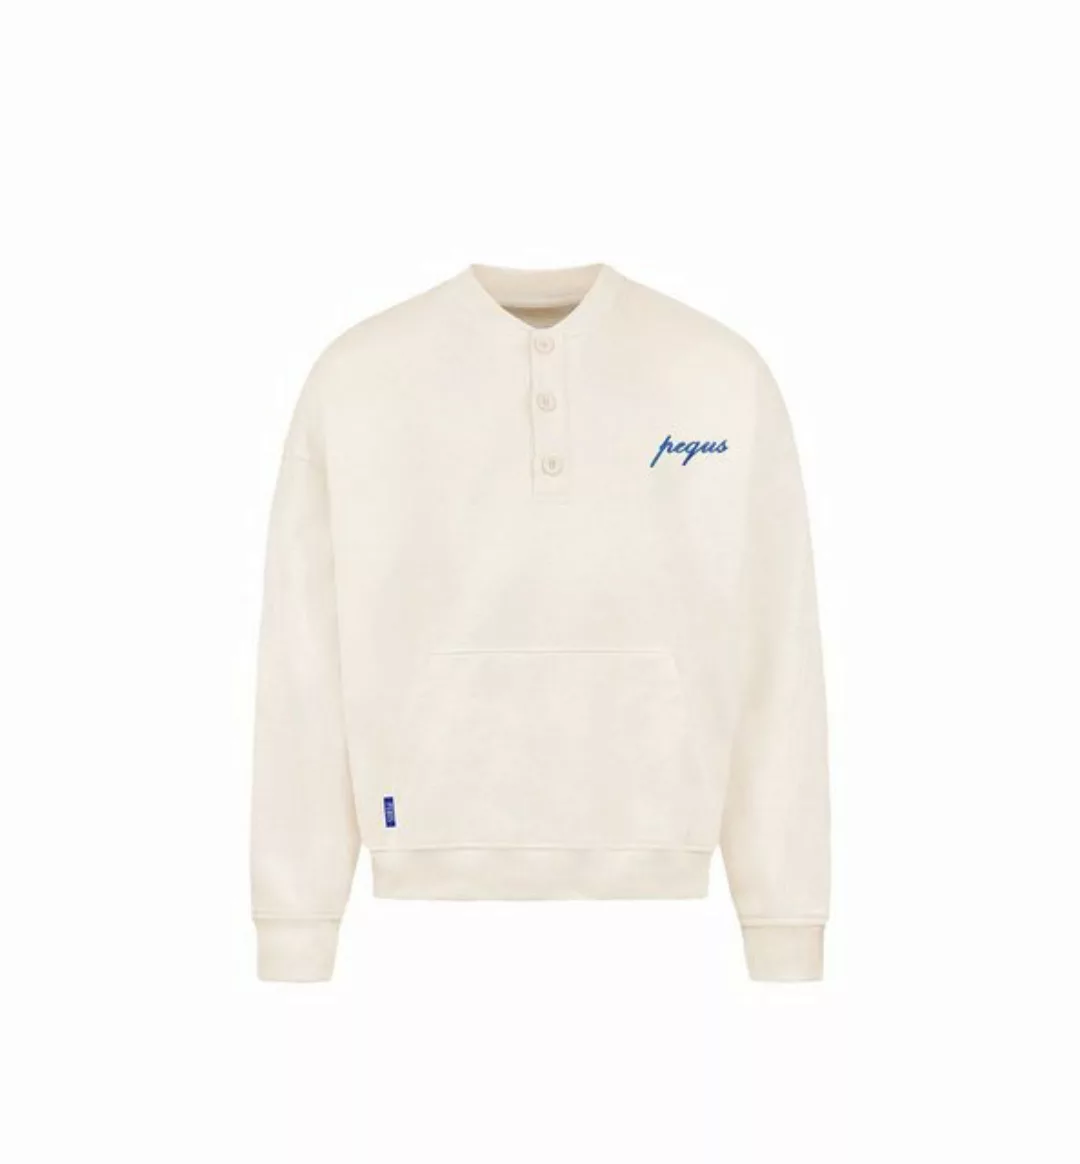 PEQUS Sweater Button Up L günstig online kaufen